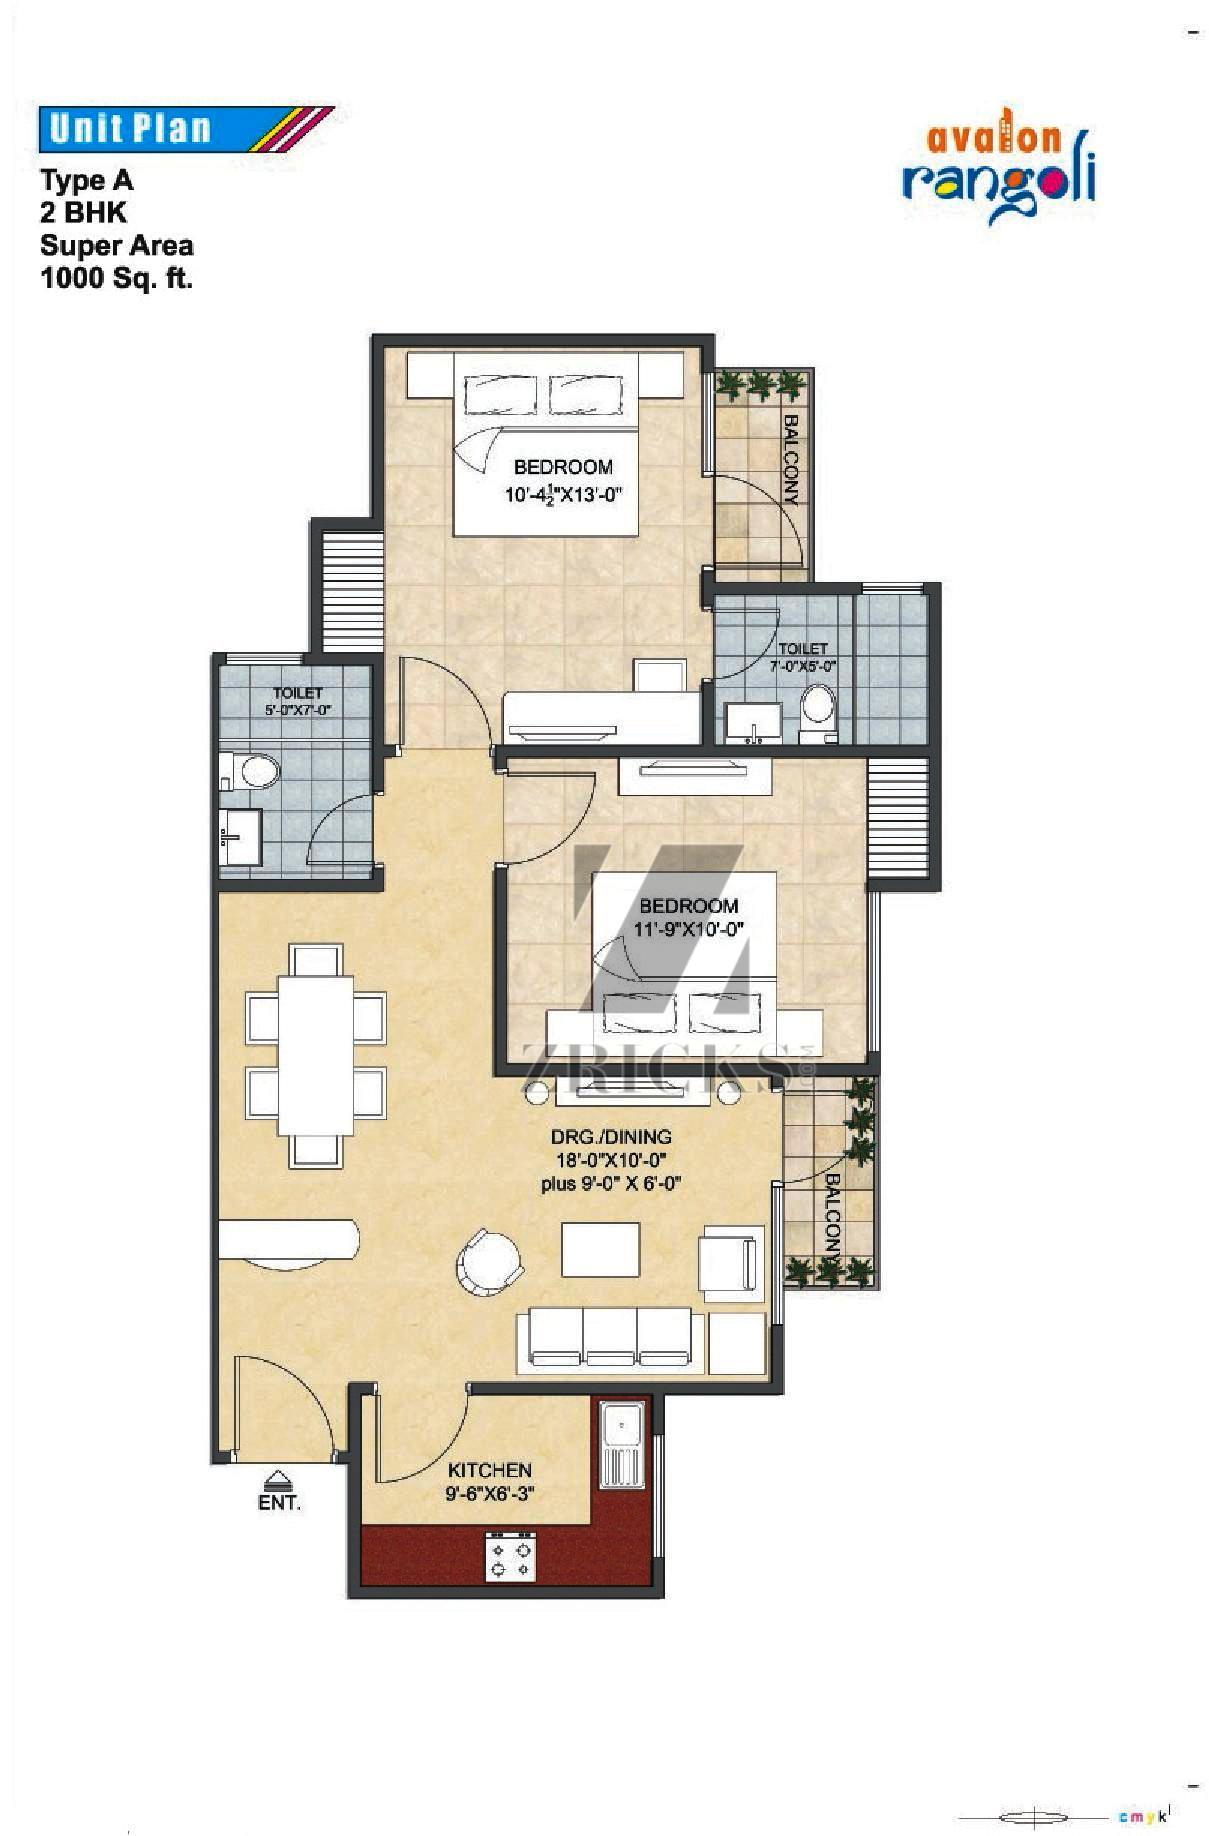 Avalon Rangoli Floor Plan